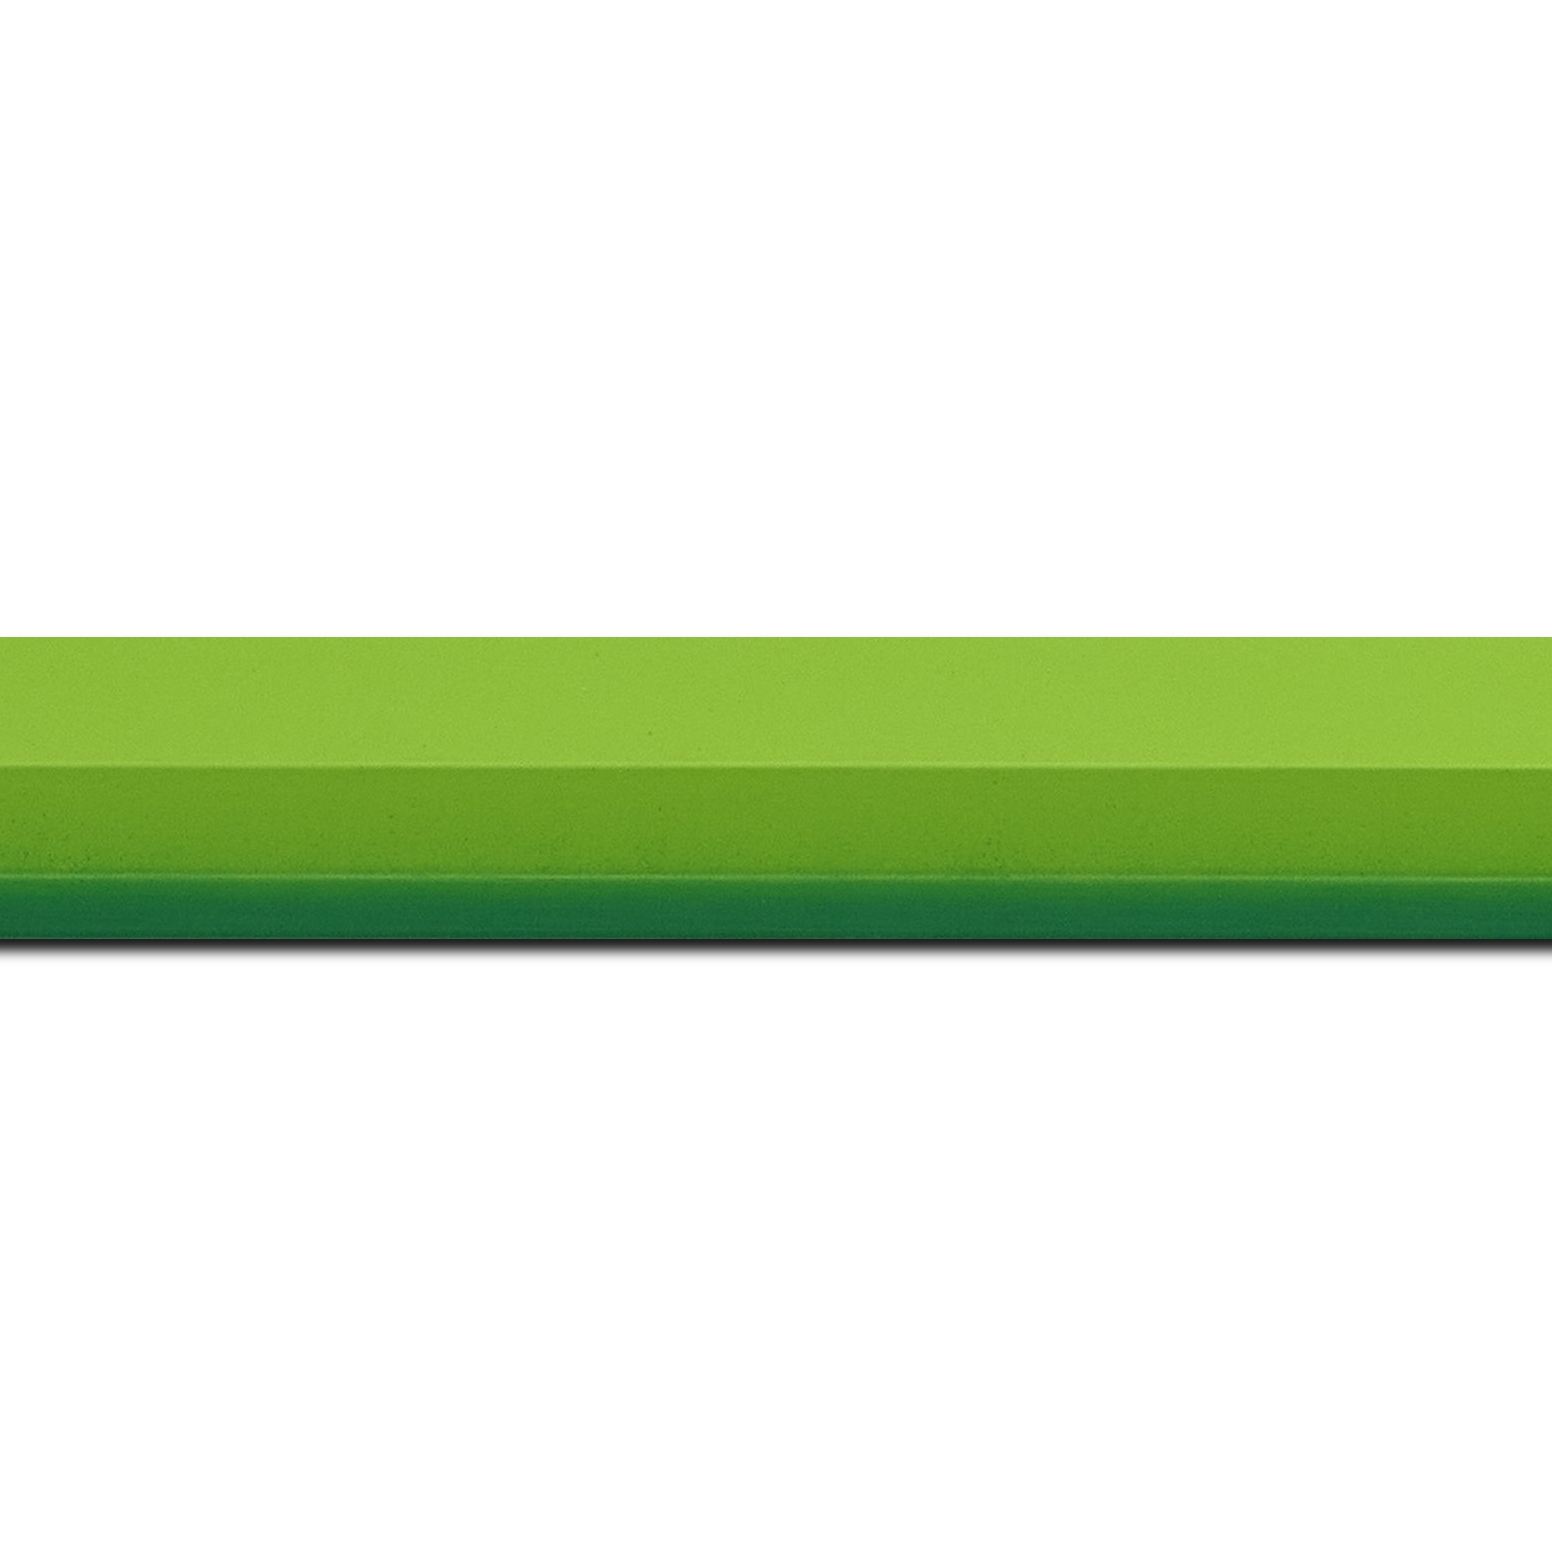 Pack par 12m, bois profil plat 3 faces largeur 2.8cm de couleur vert tendre mat , nez intérieur vert foncé mat dégradé (finition pore bouché) (longueur baguette pouvant varier entre 2.40m et 3m selon arrivage des bois)